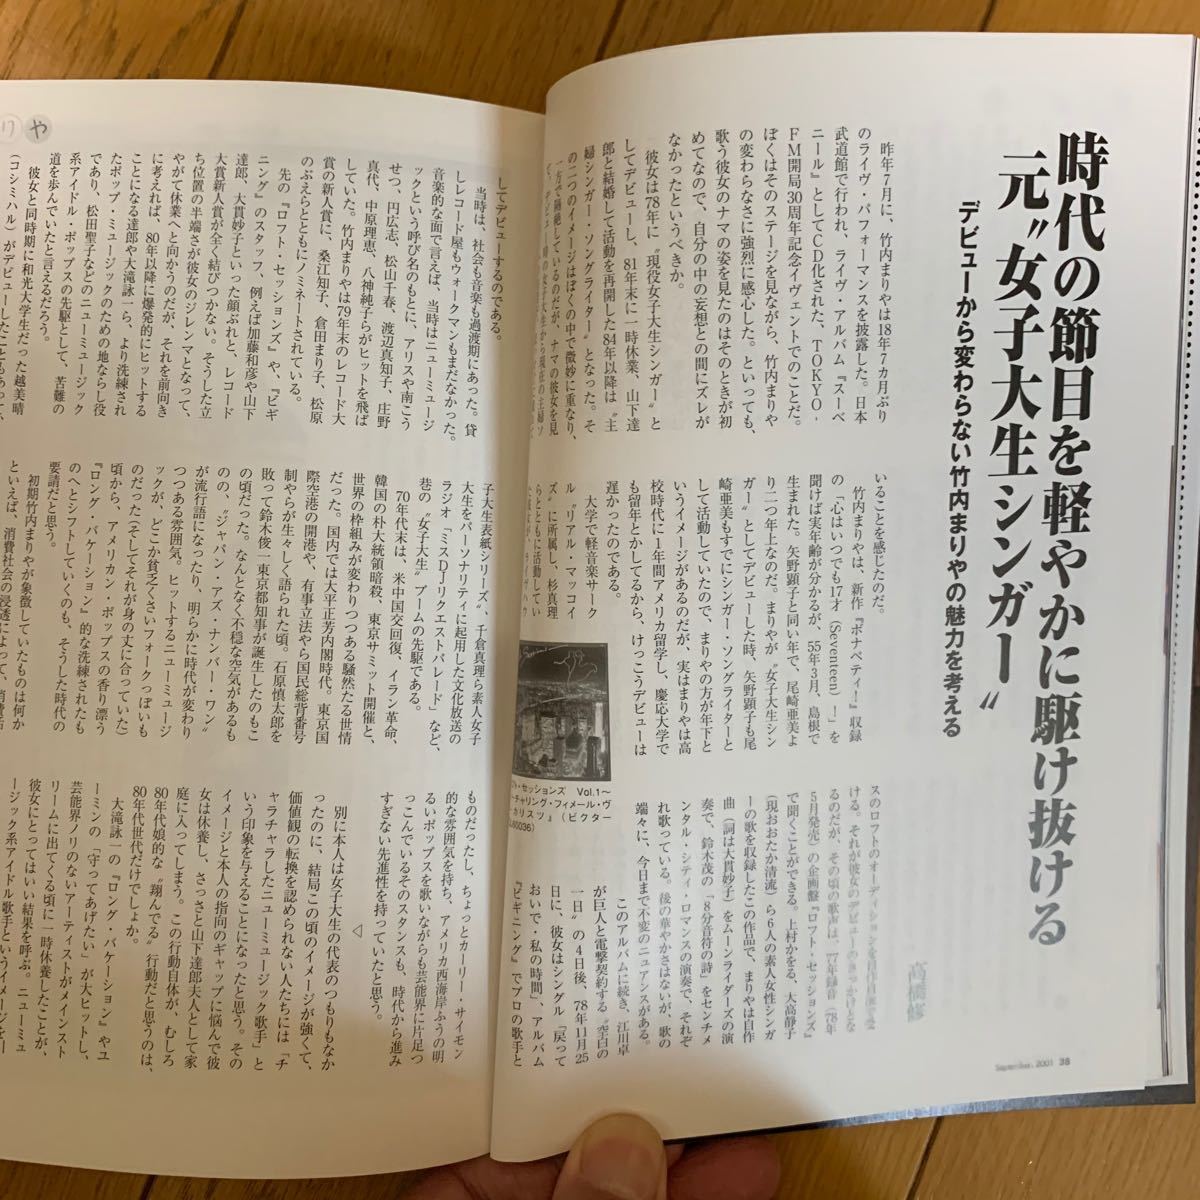 竹内まりやインタビュー記事掲載 ミュージックマガジン2001年9月号